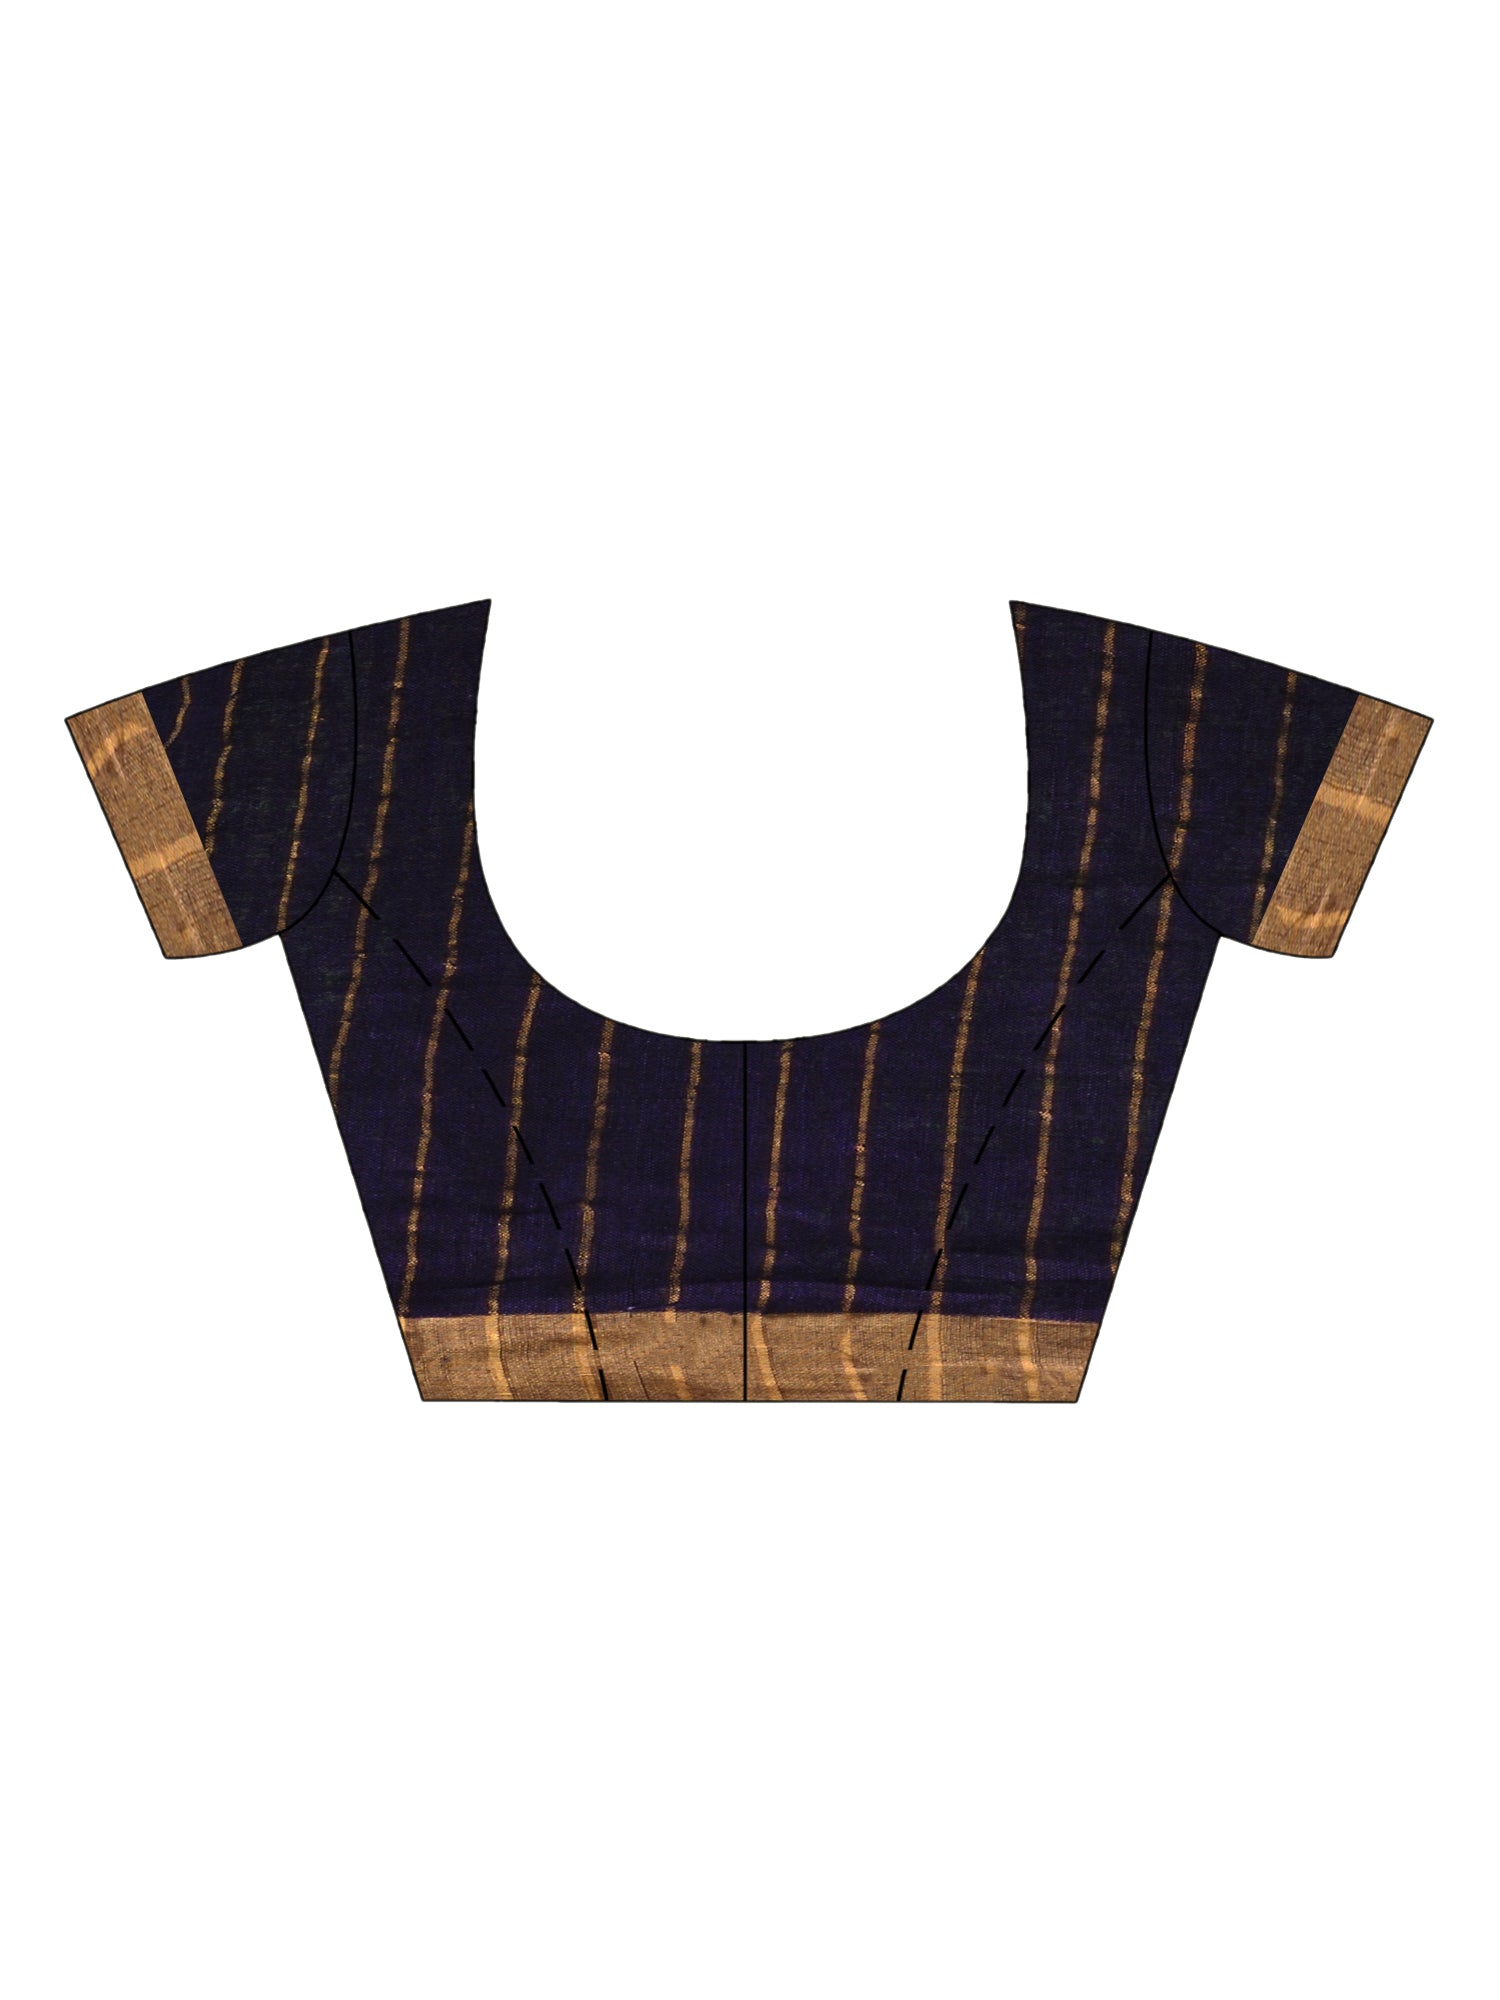 Women's Violet linen half check and huff solid body jamdani saree - Angoshobha